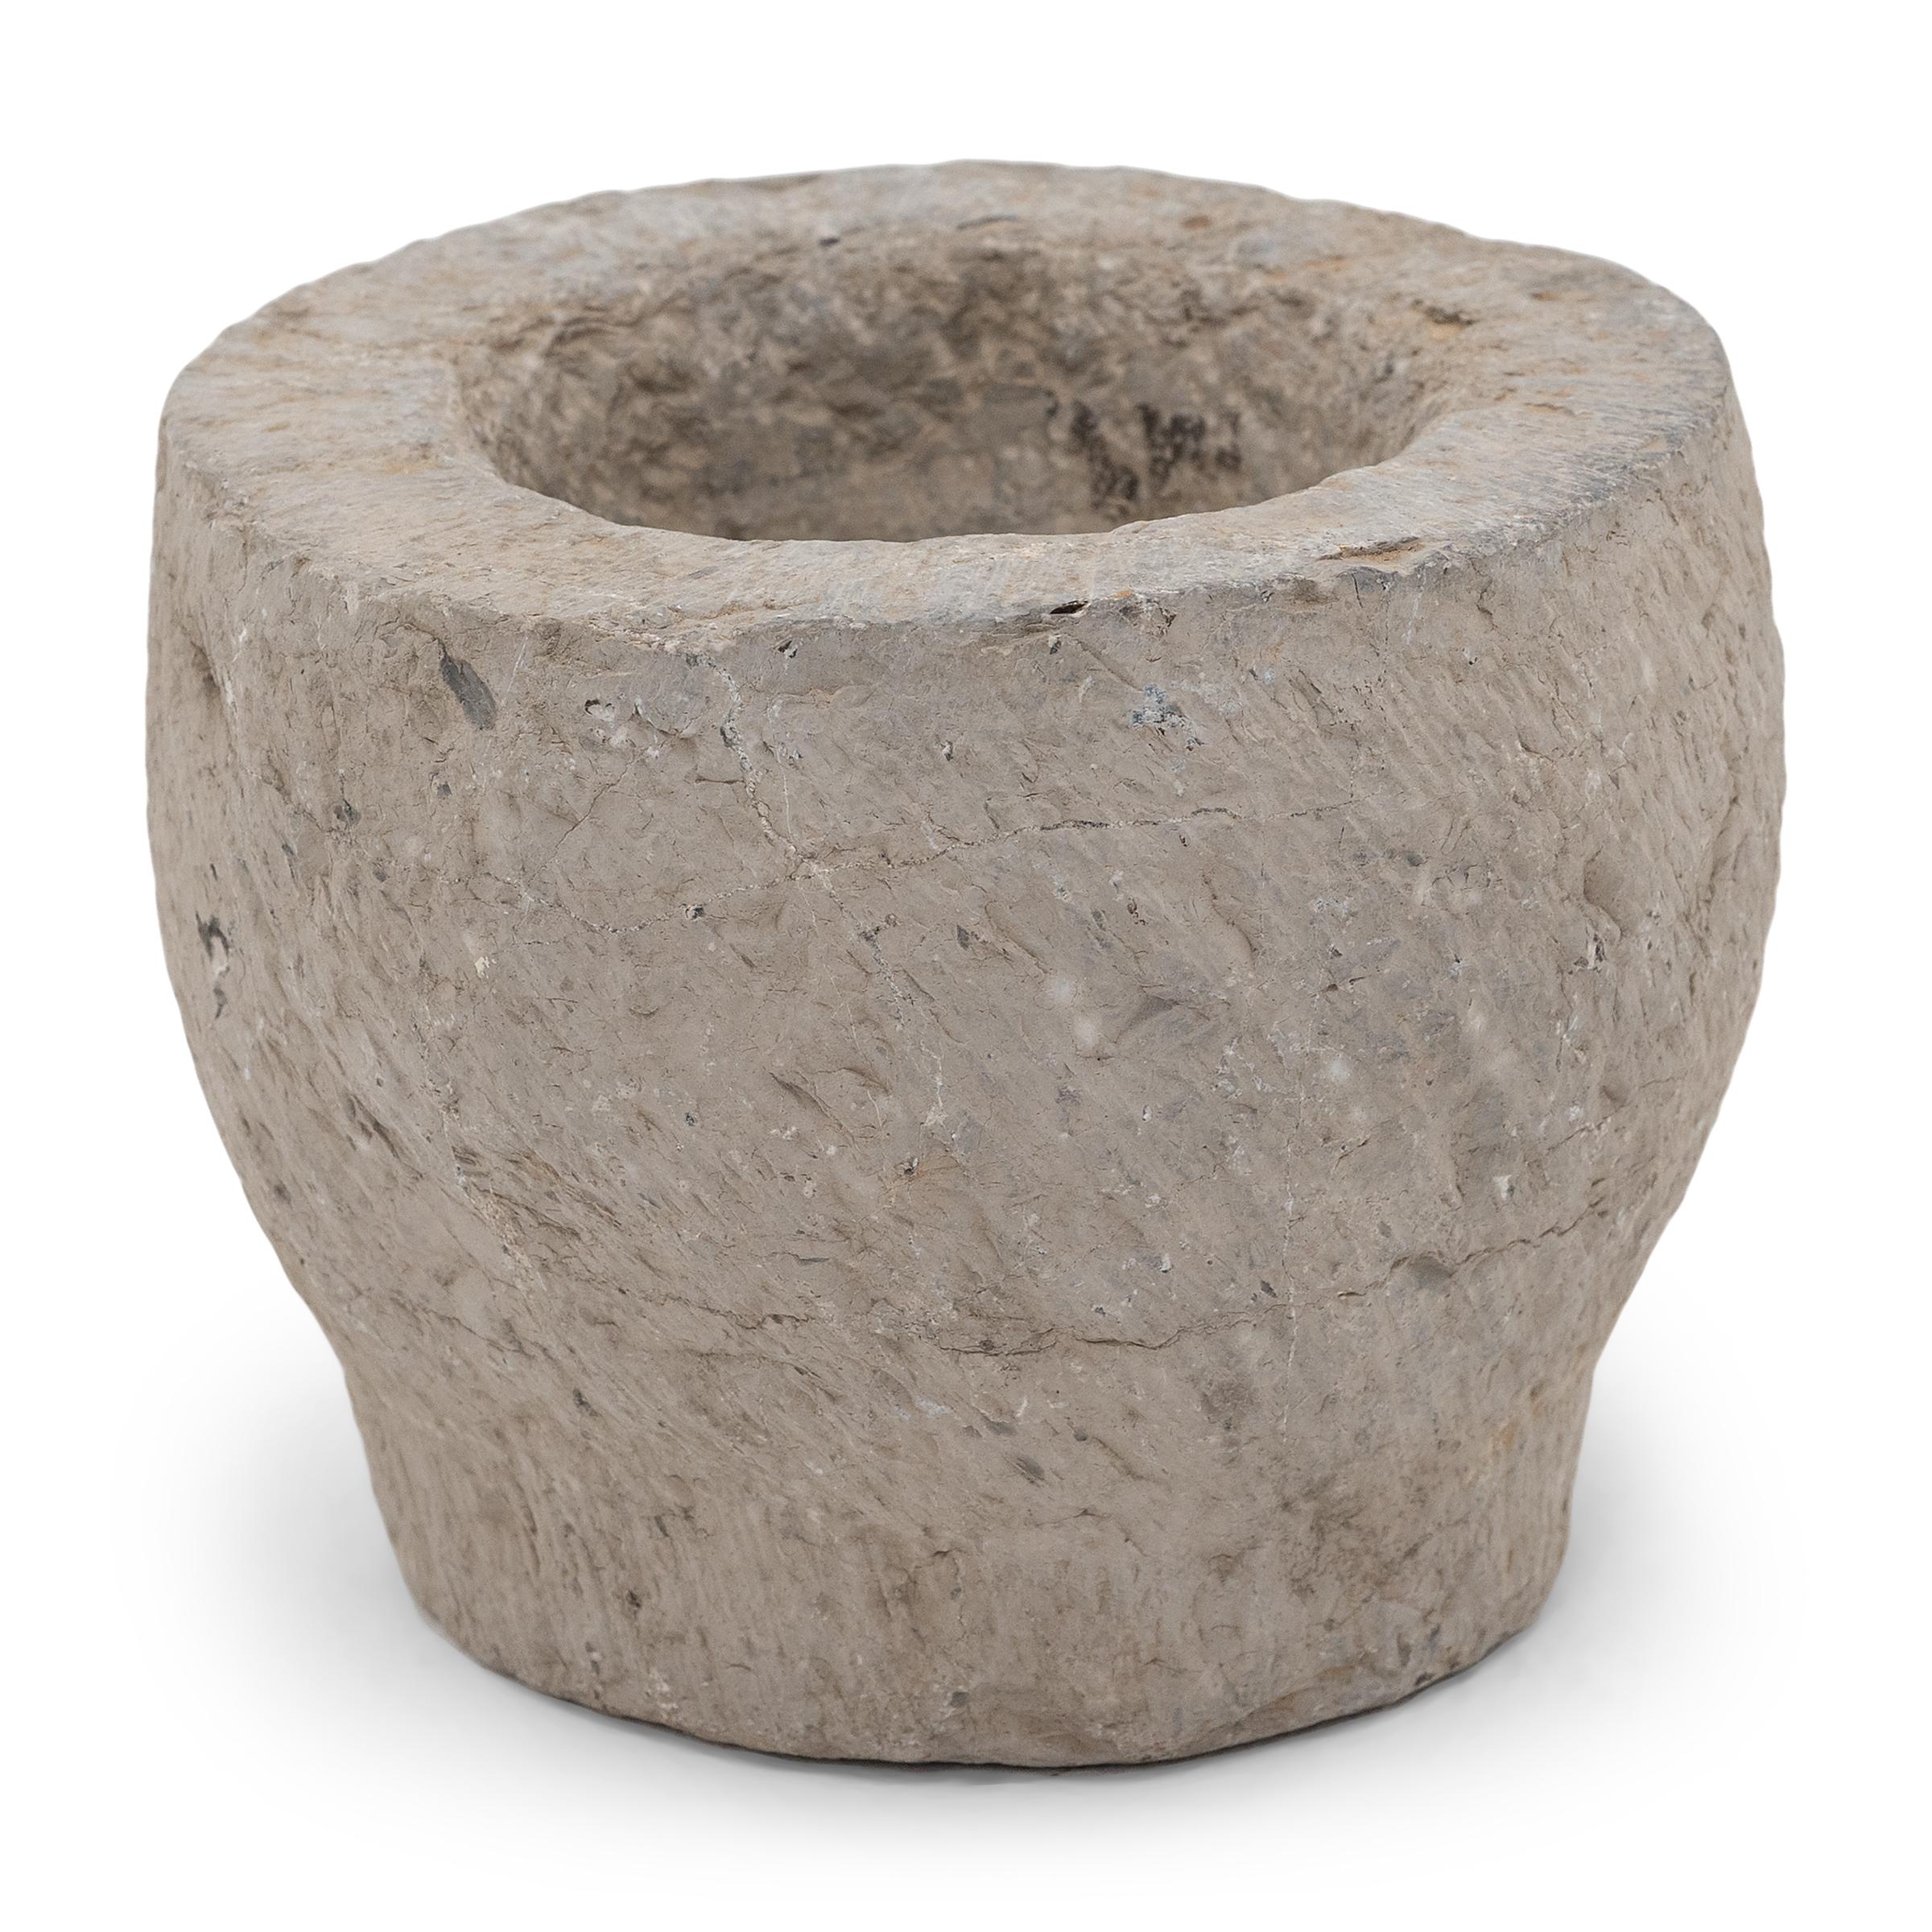 Dieses aus einem einzigen Kalksteinblock gehauene Steingefäß ist ein Mörser aus dem frühen 19. Jahrhundert, der einst zum Zermahlen von Gewürzen, Kräutern und anderen Würzmitteln verwendet wurde. Das von Hand gemeißelte, rustikale Äußere ist mit dem